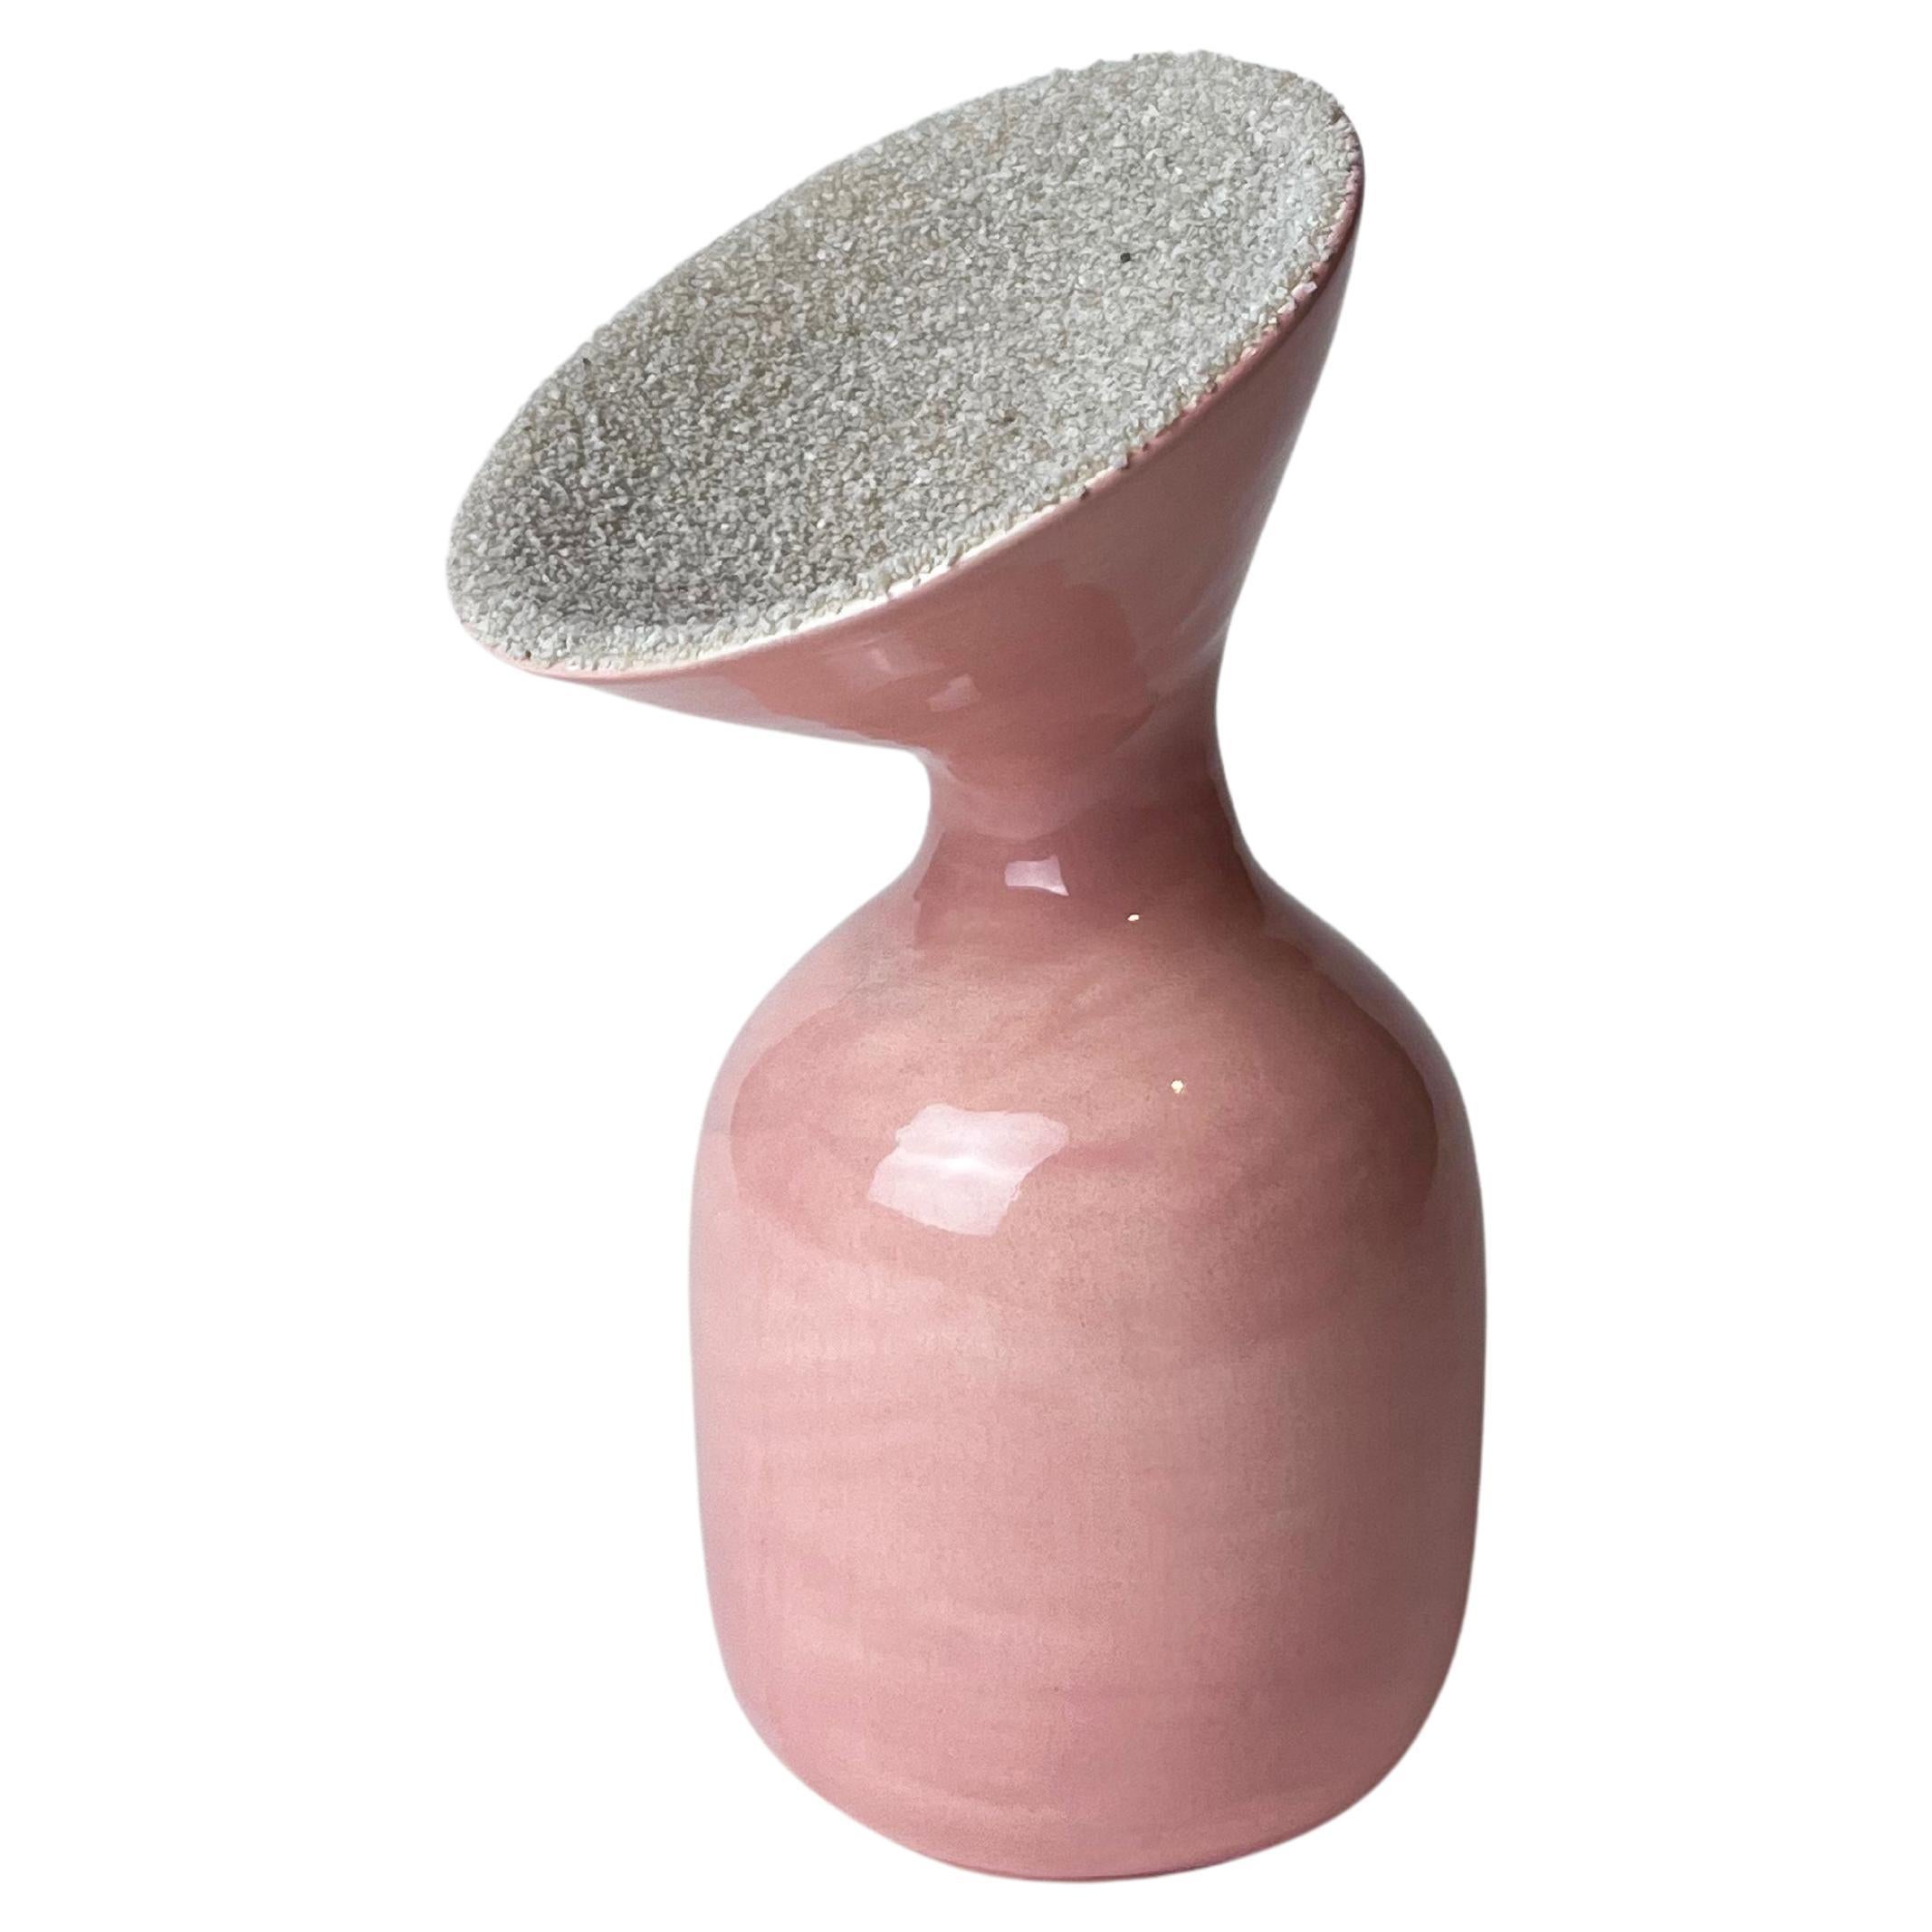 Small glazed ceramic vase with double finish